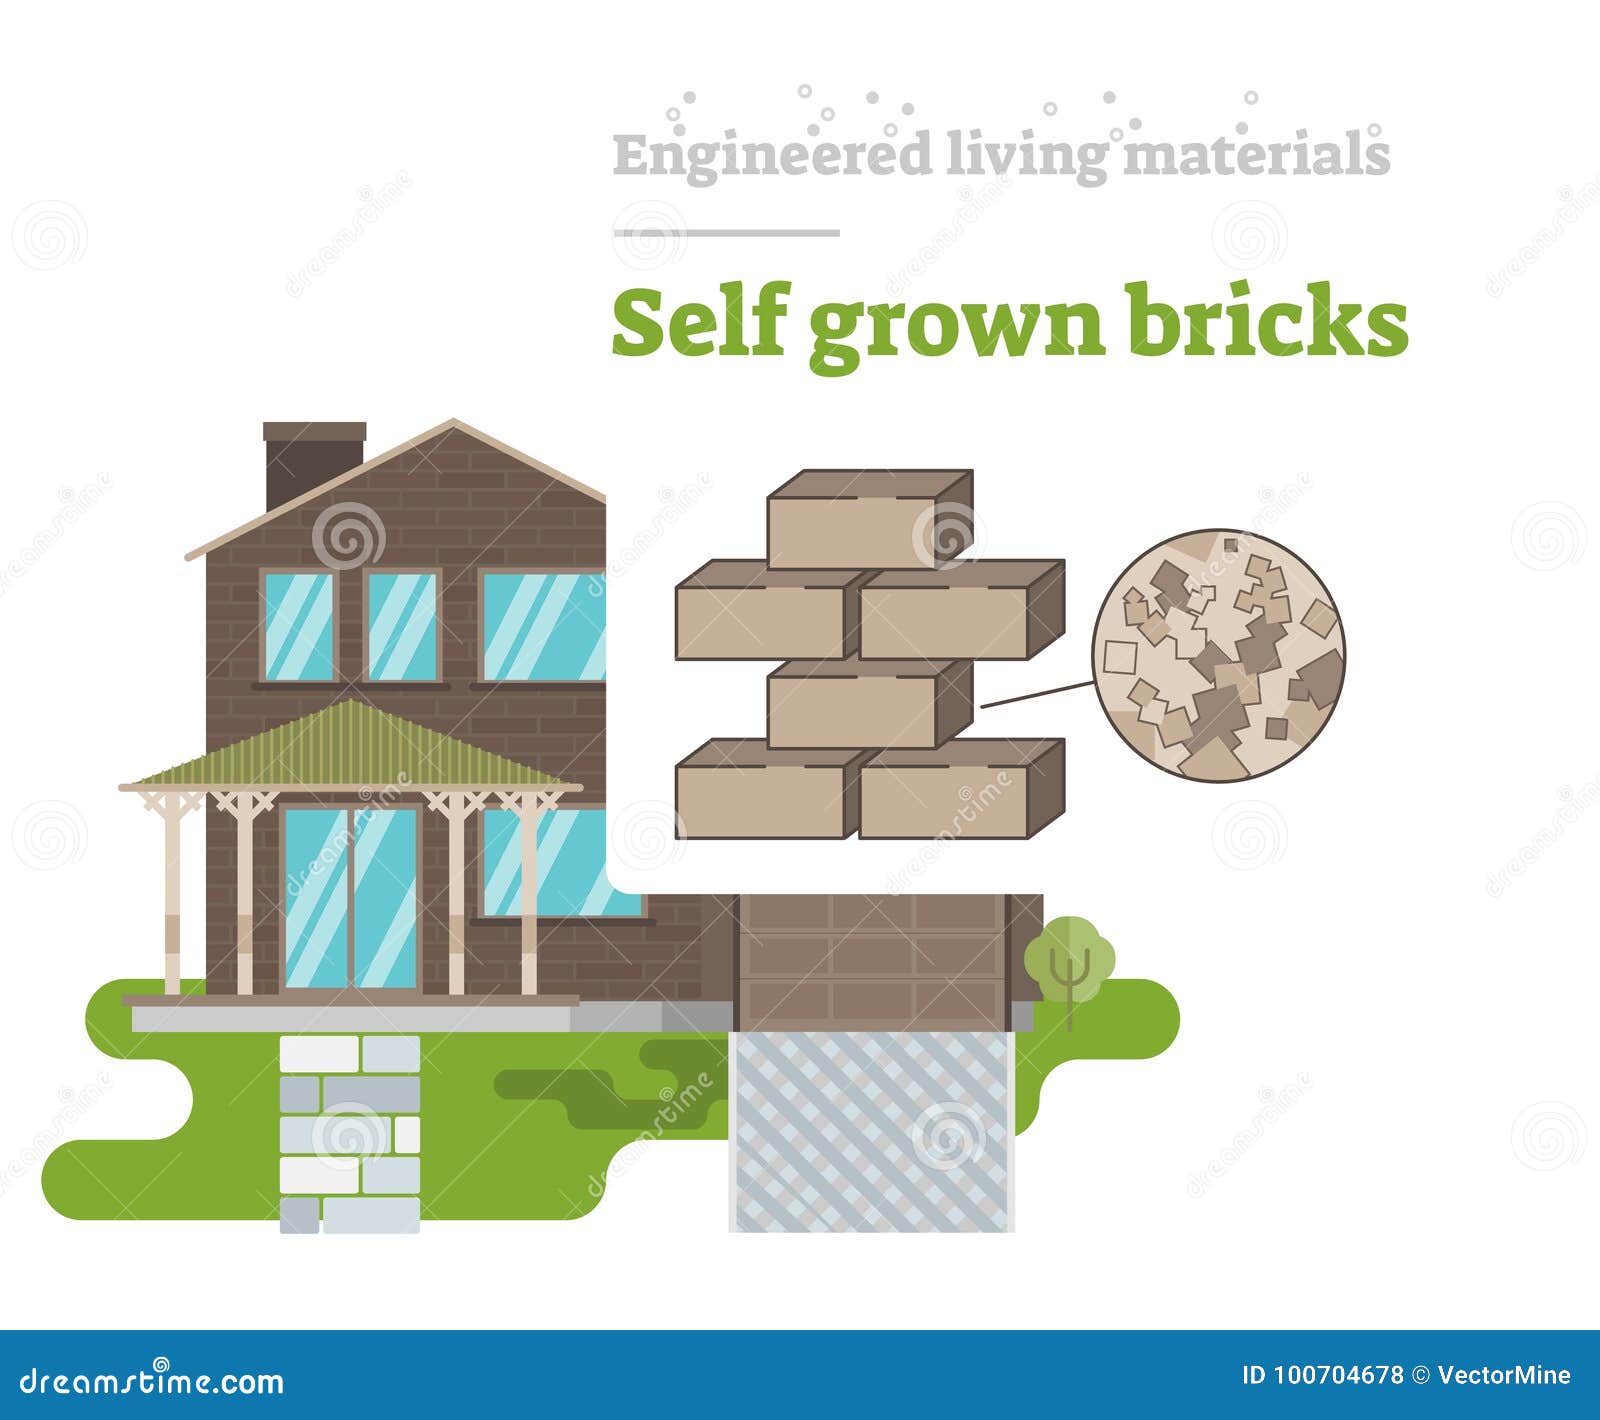 self grown bricks - engineered living material